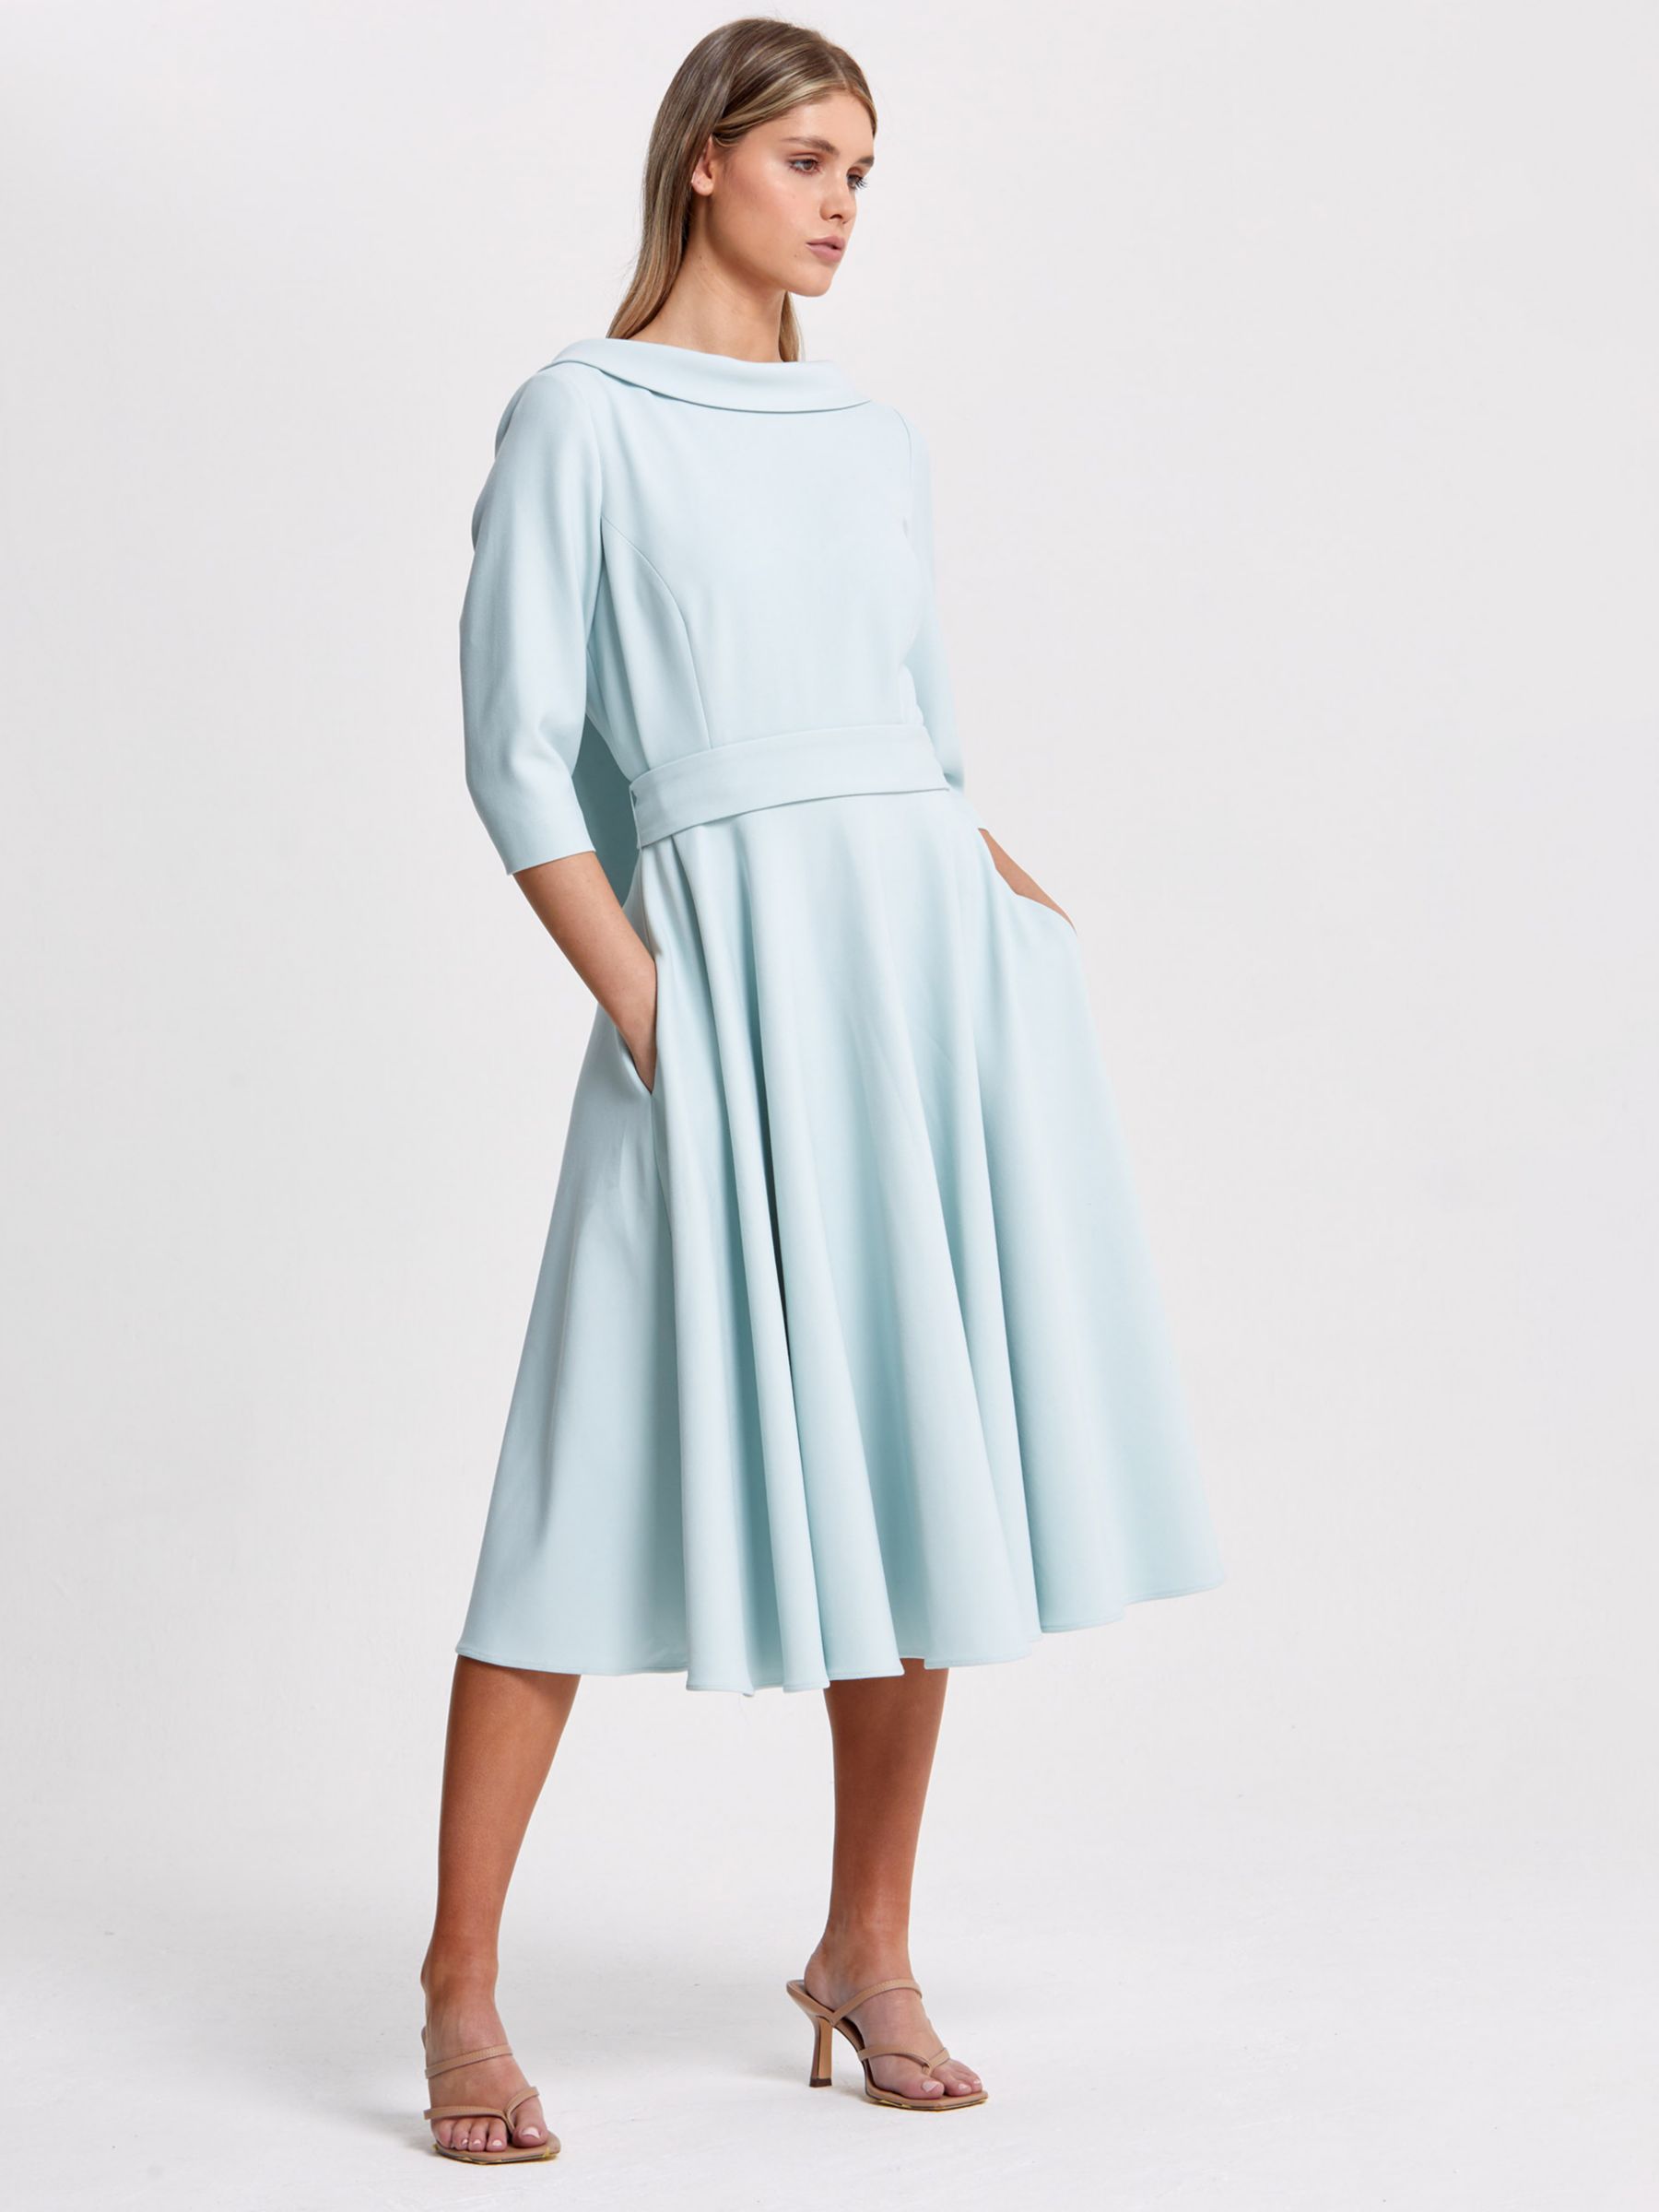 Helen McAlinden Luna Mist Dress, Light Blue at John Lewis & Partners